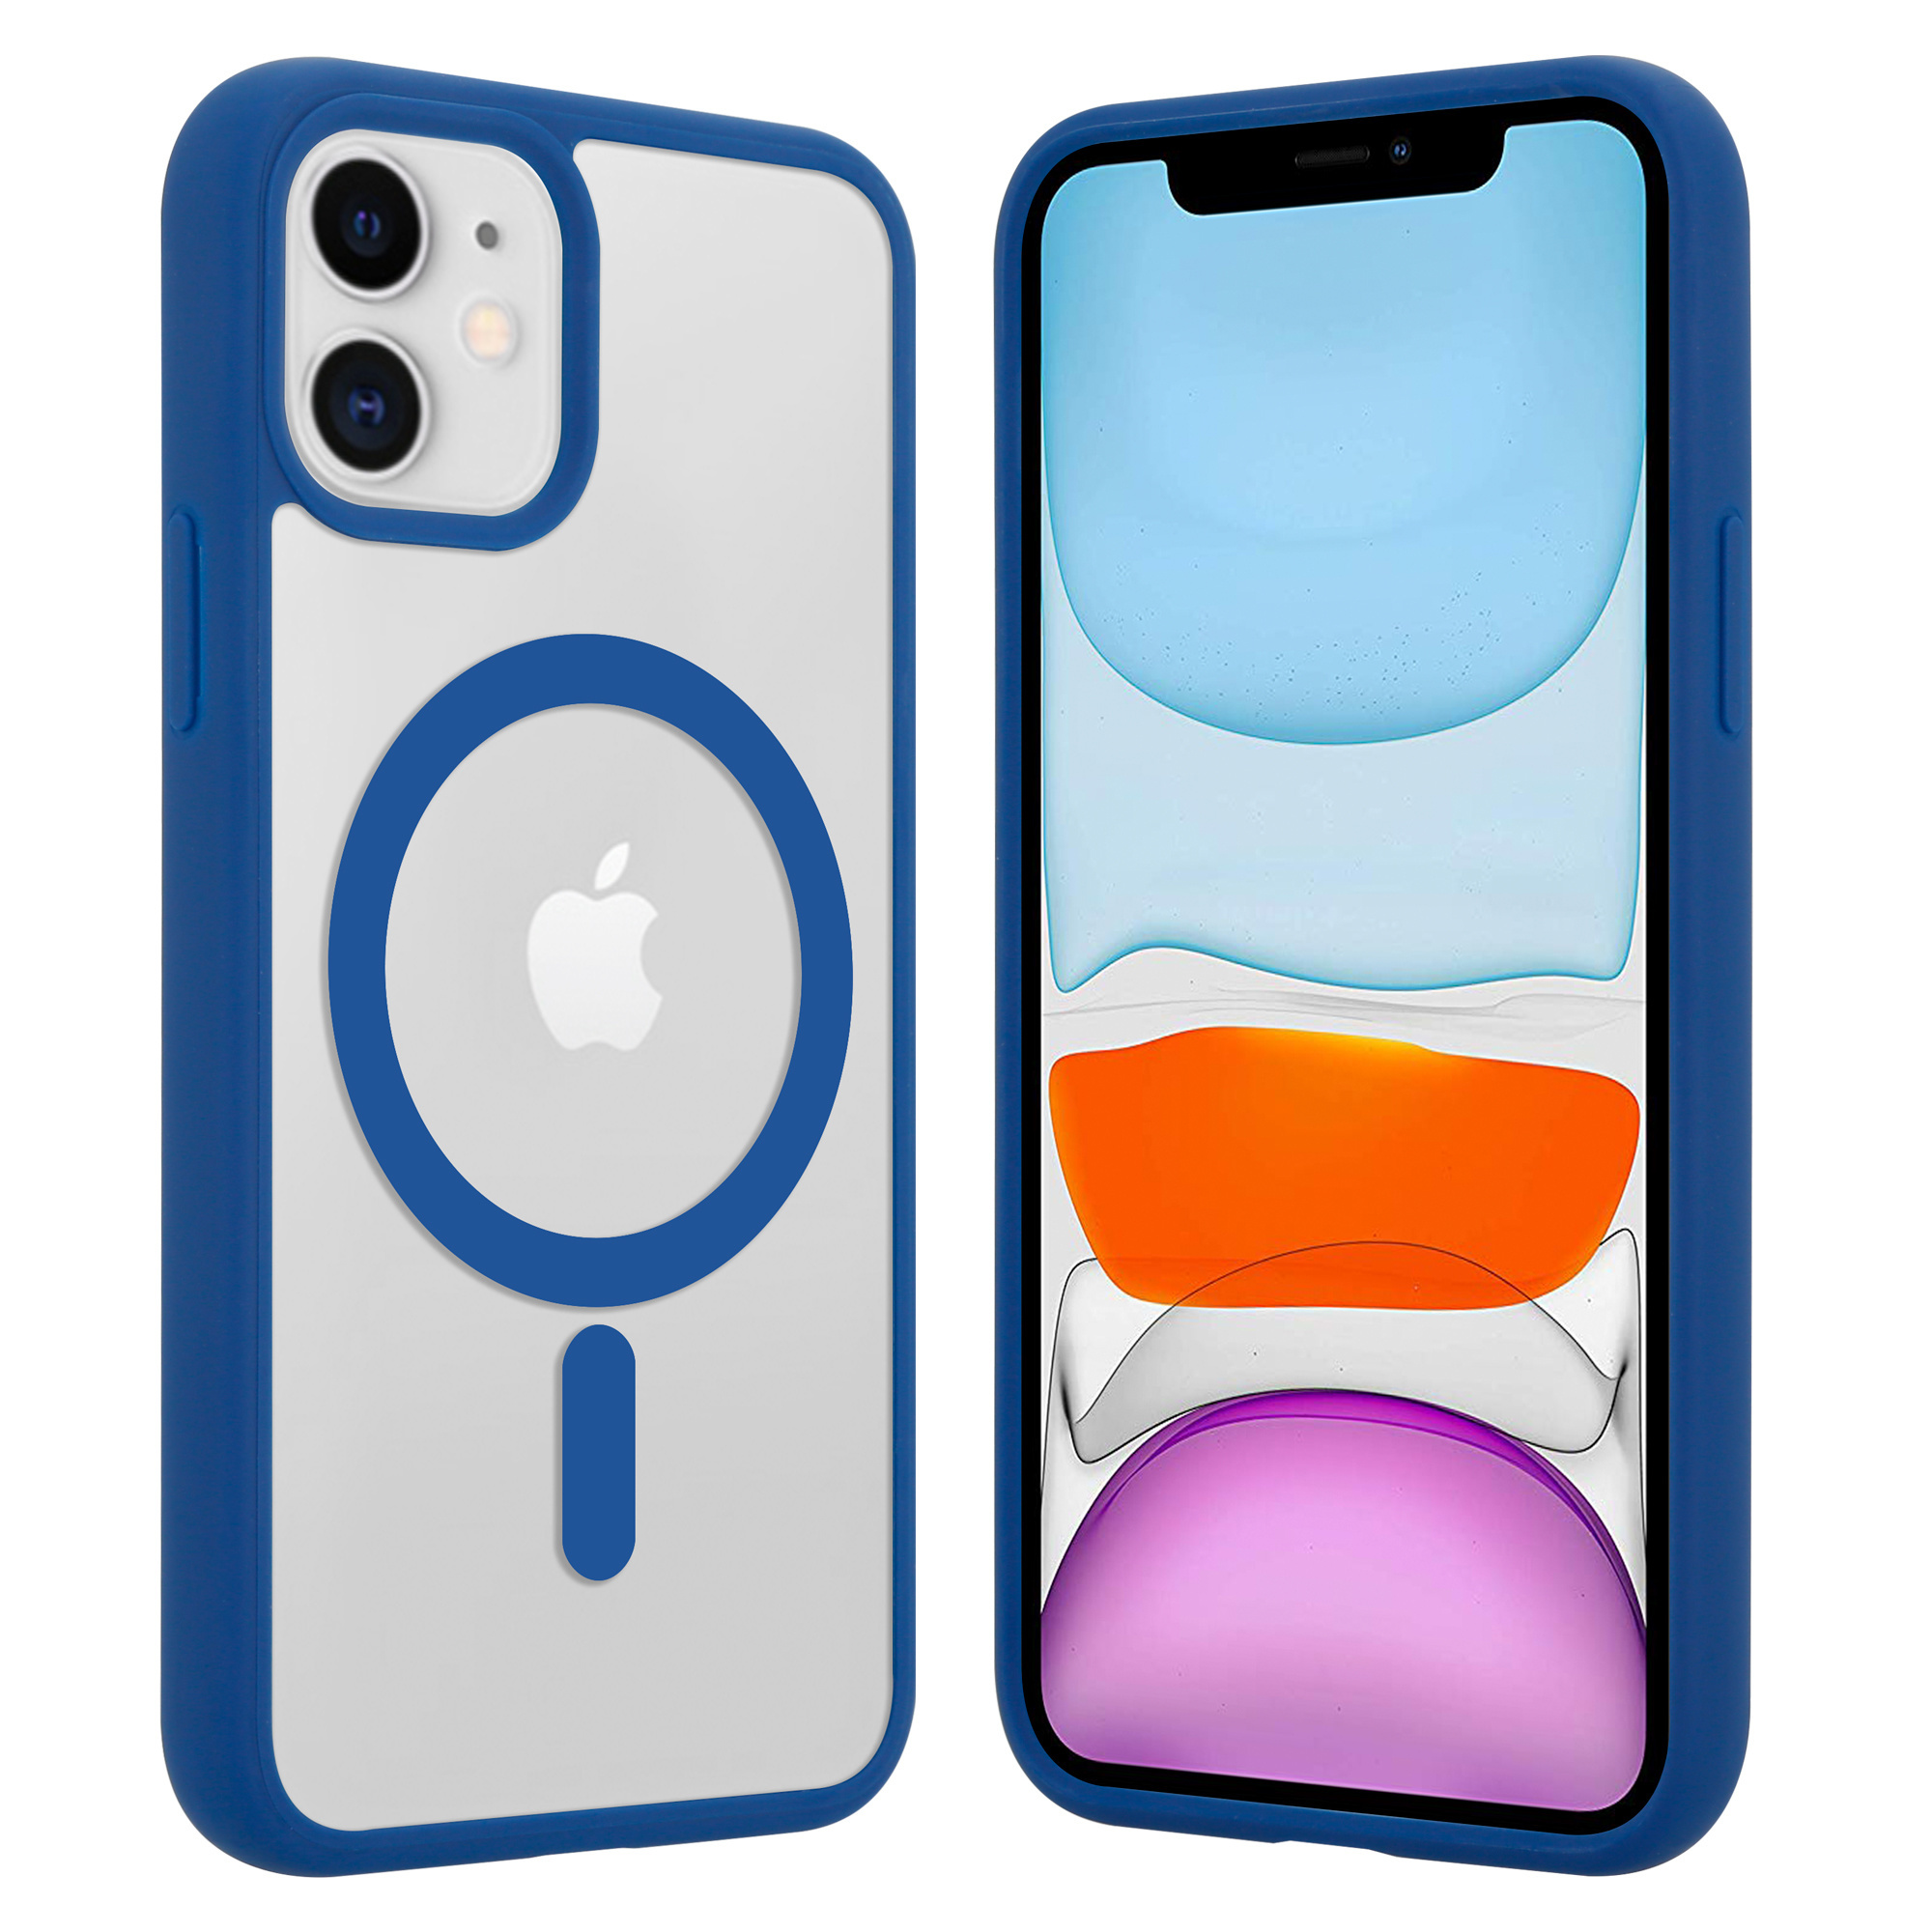 Funda transparente MagSafe iPhone 11 borde de color (azul)